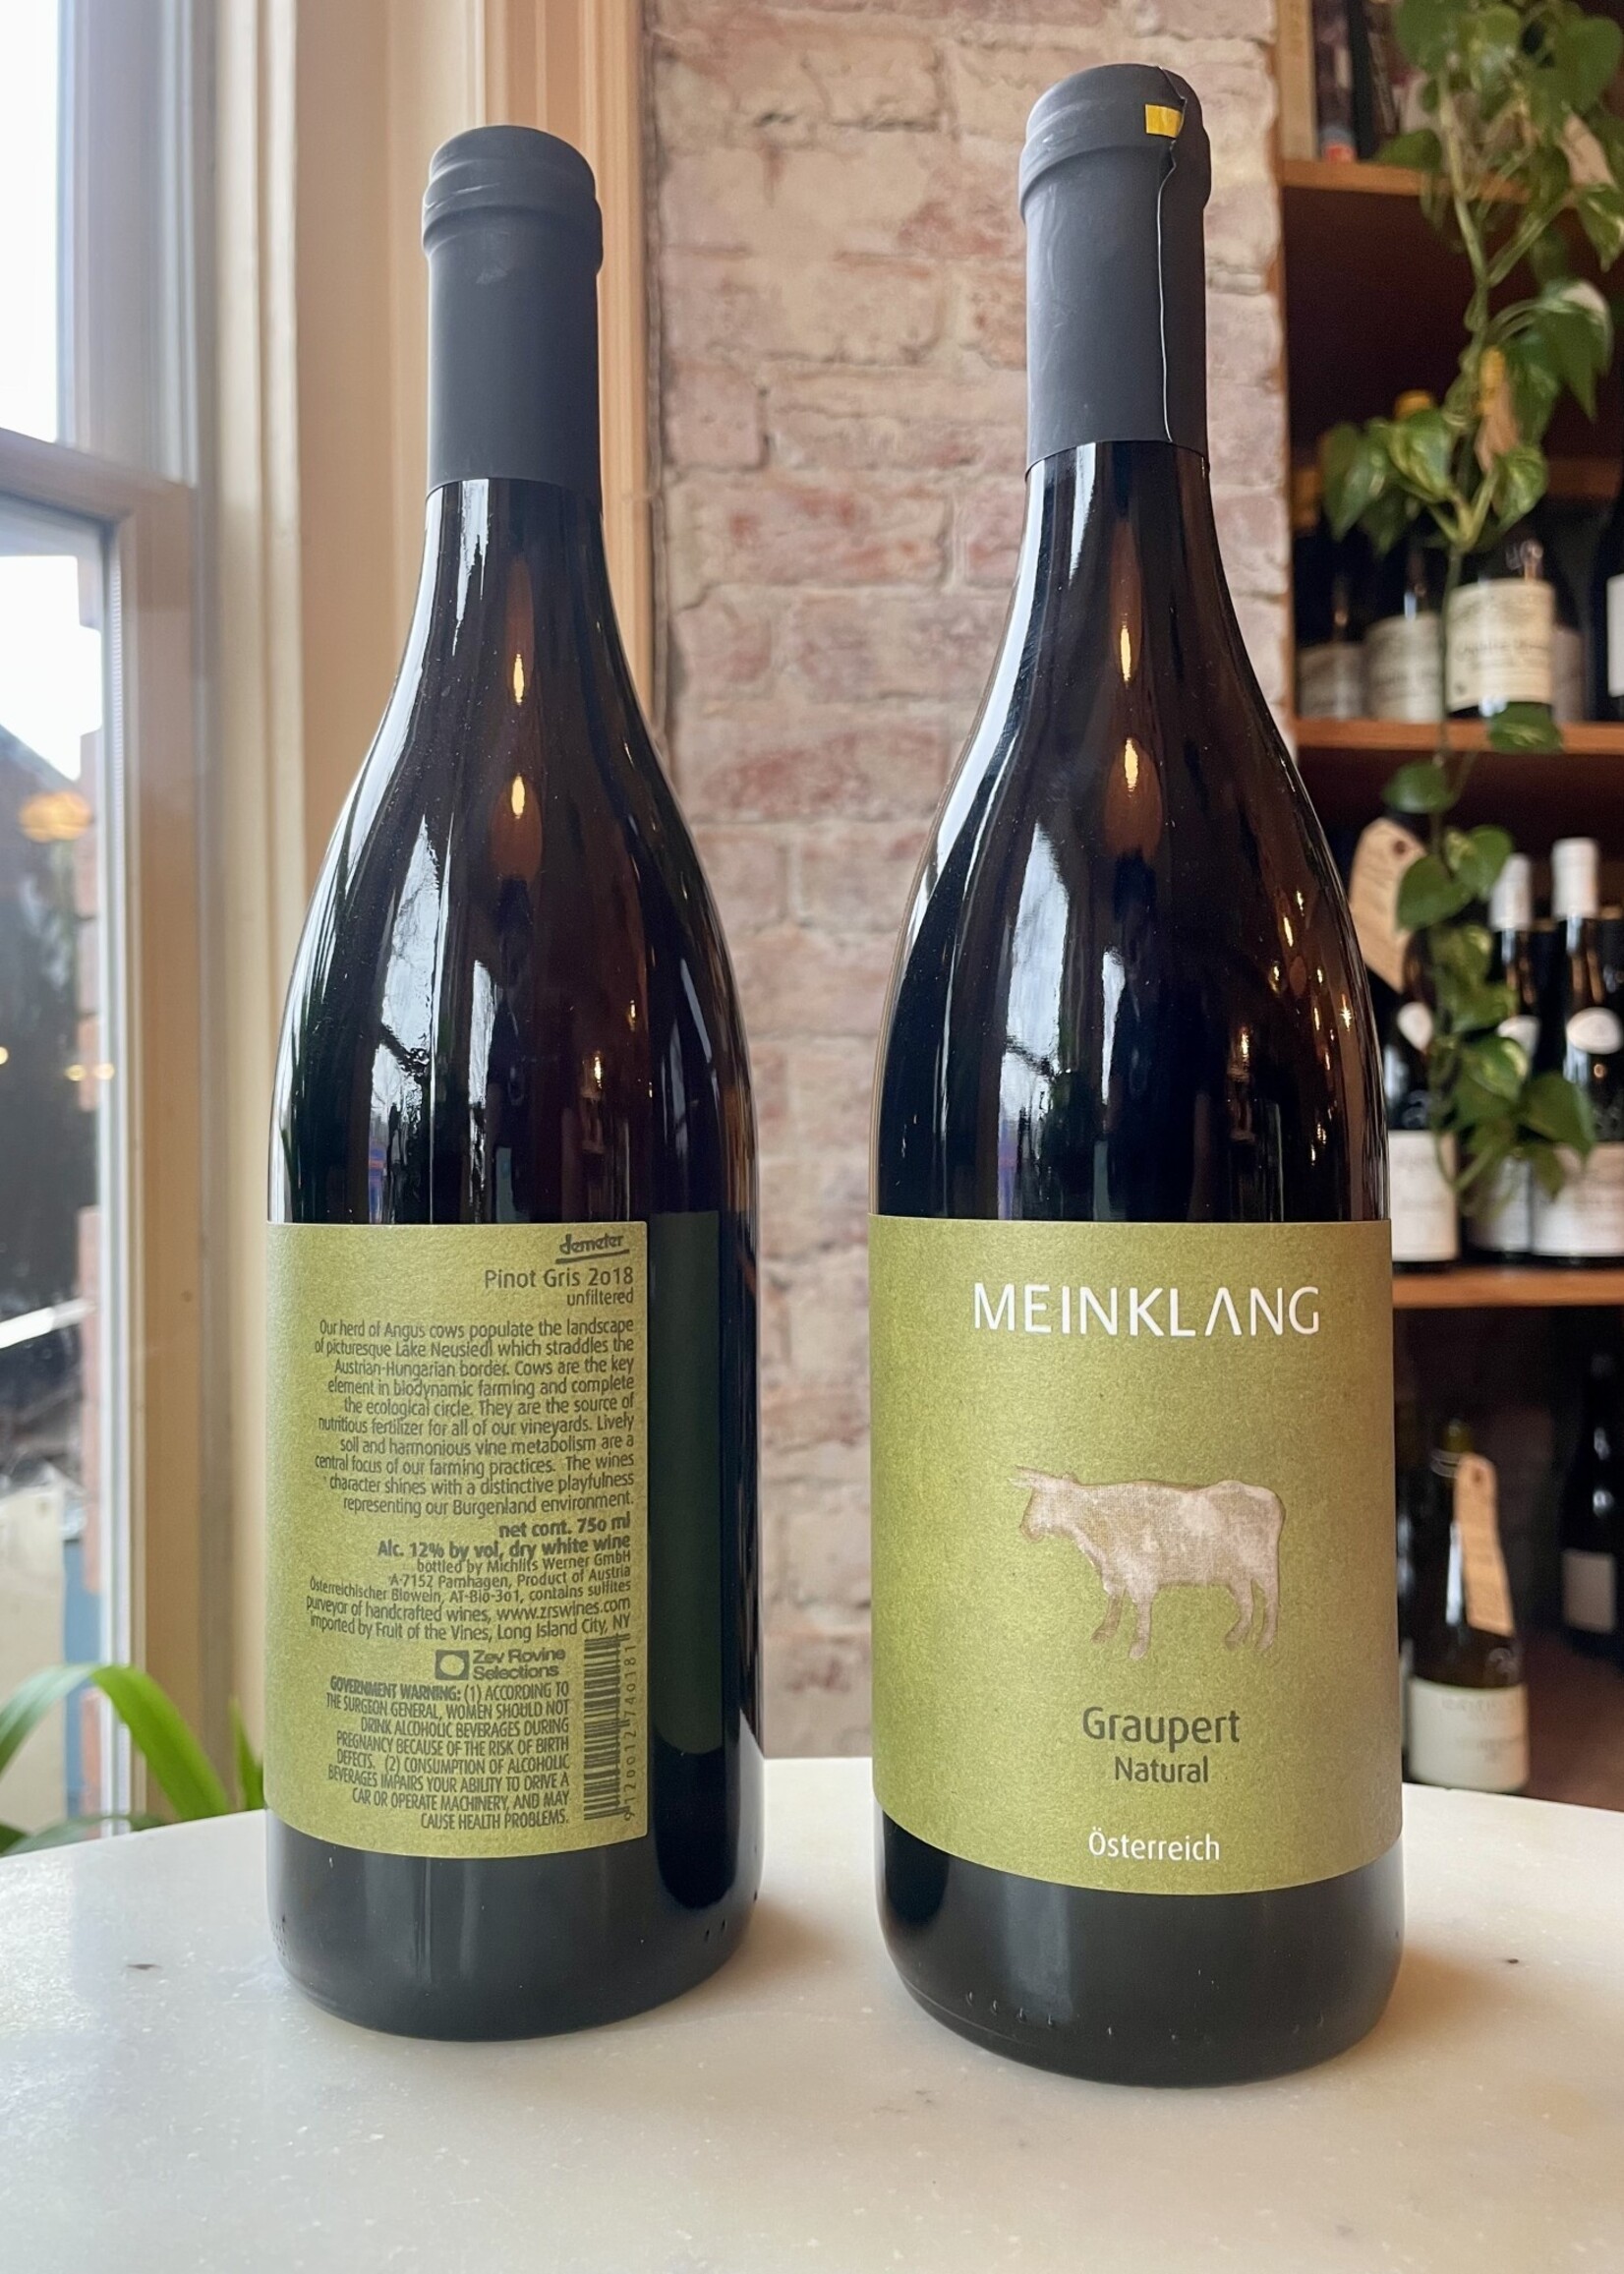 Meinklang 'Graupert Natural' Pinot Gris, Austria 2018